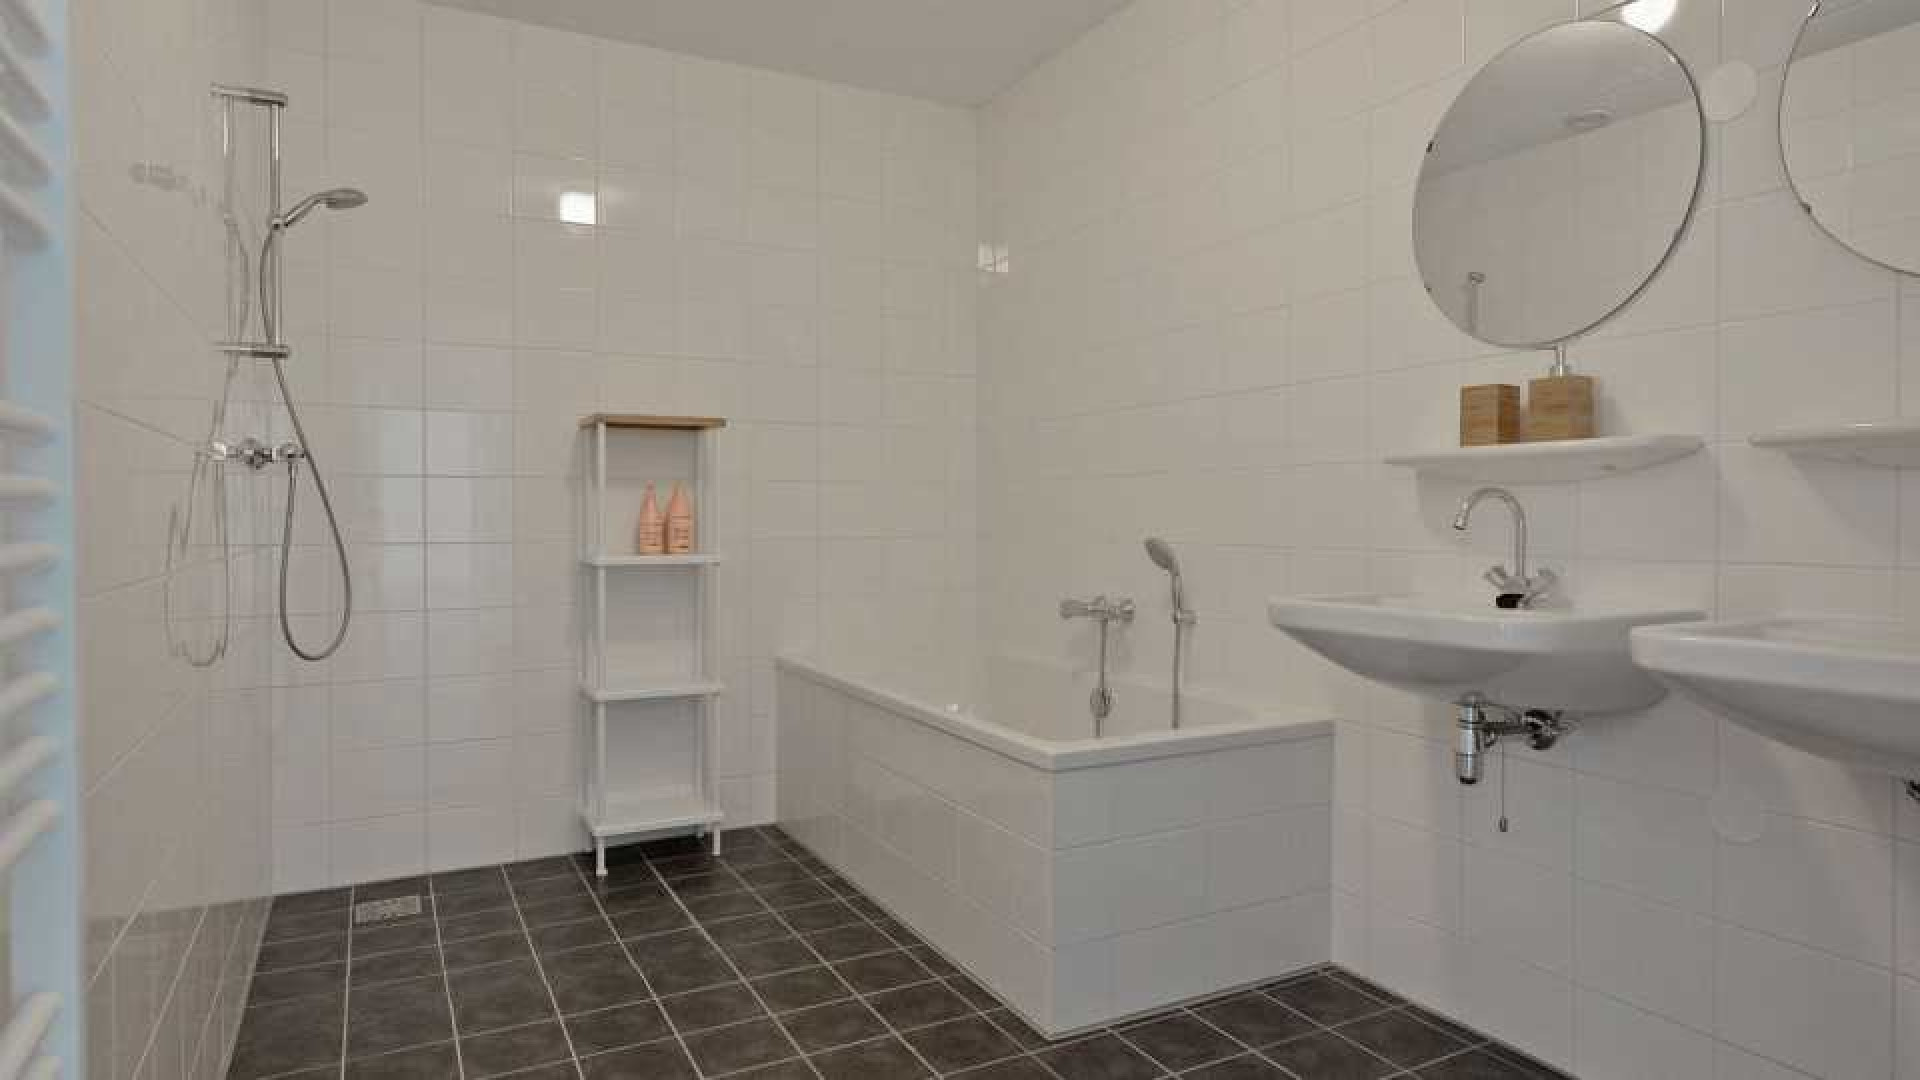 PSV voetballer Steven Bergwijn koopt luxe appartement in Amsterdam 13